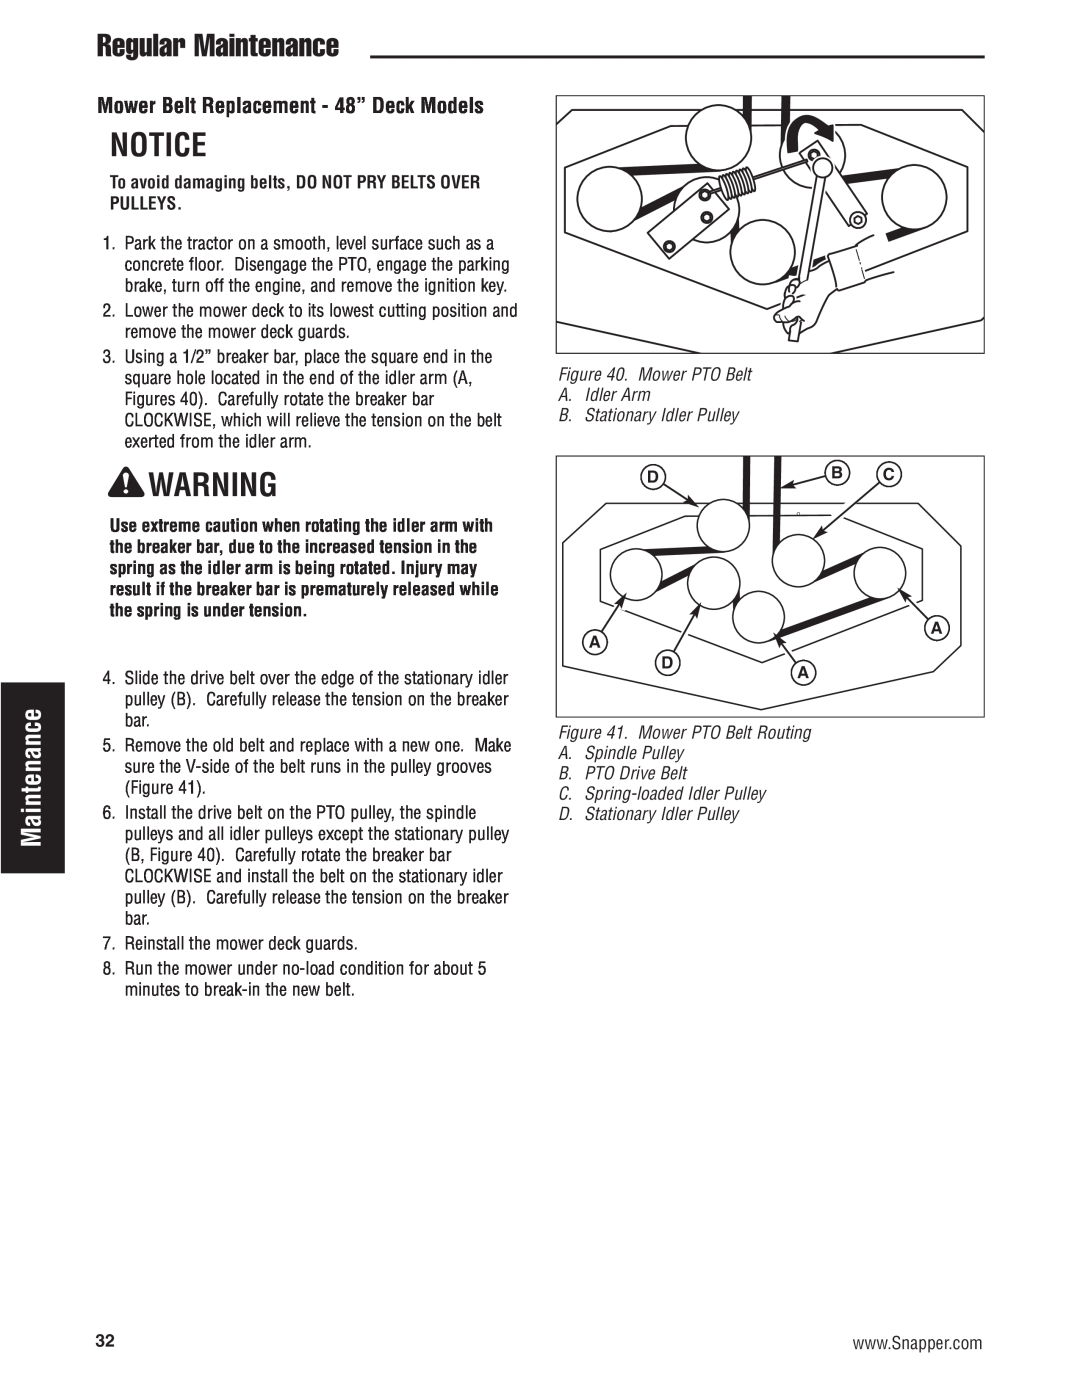 Snapper 500Z manual Regular Maintenance, Mower Belt Replacement - 48” Deck Models 